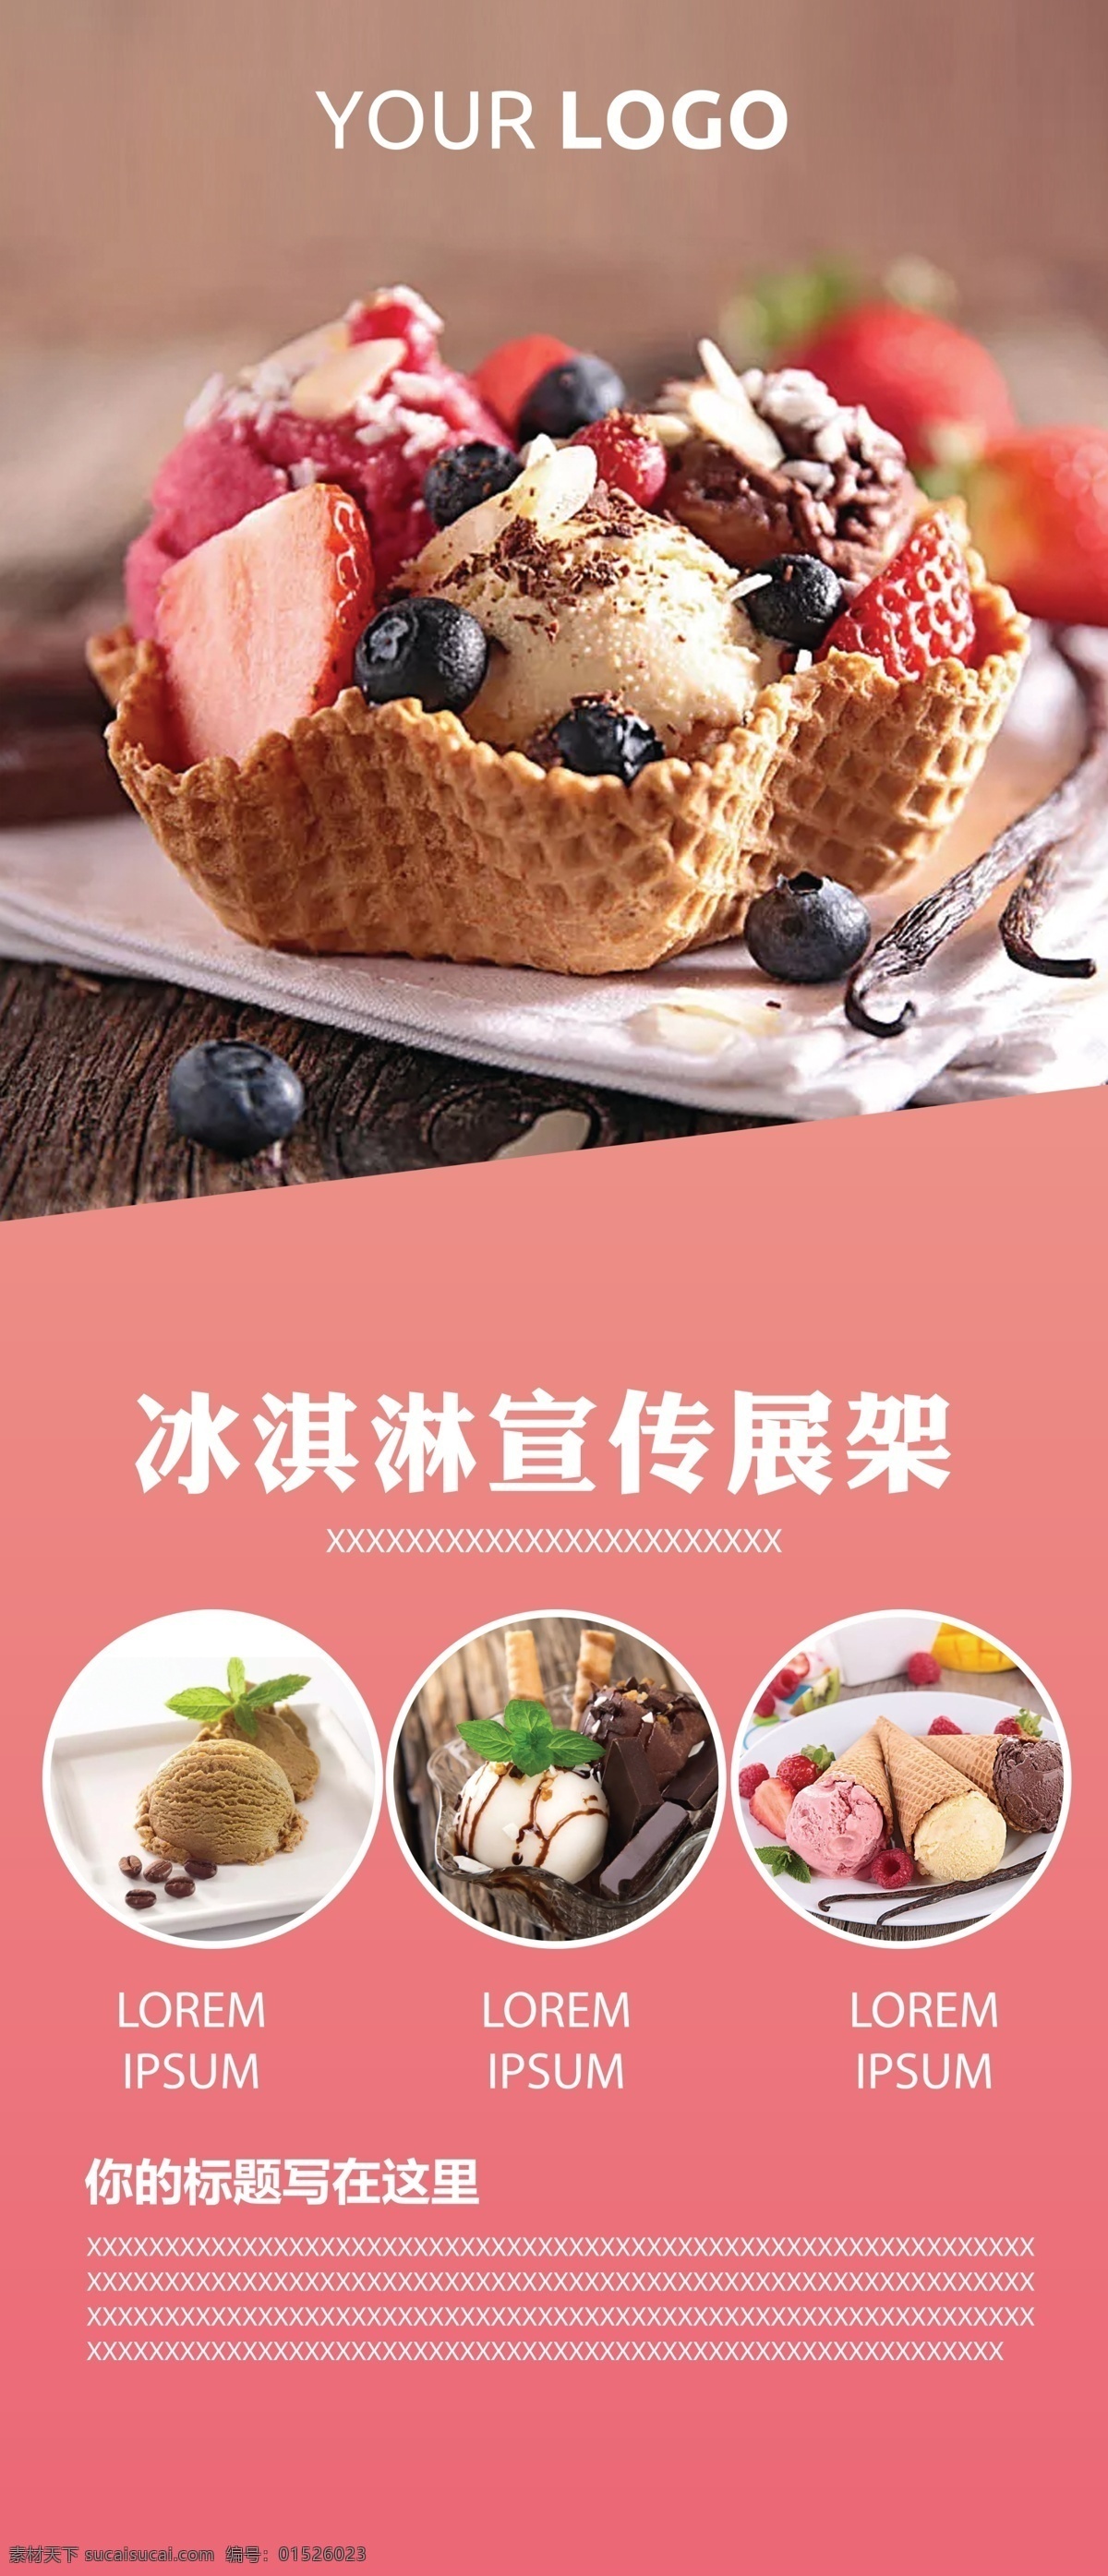 冰淇淋 宣传 展架 石榴汁 水果 海报 夏天 夏季 饮料 饮品 活动 新鲜 促销 销售 展板模板